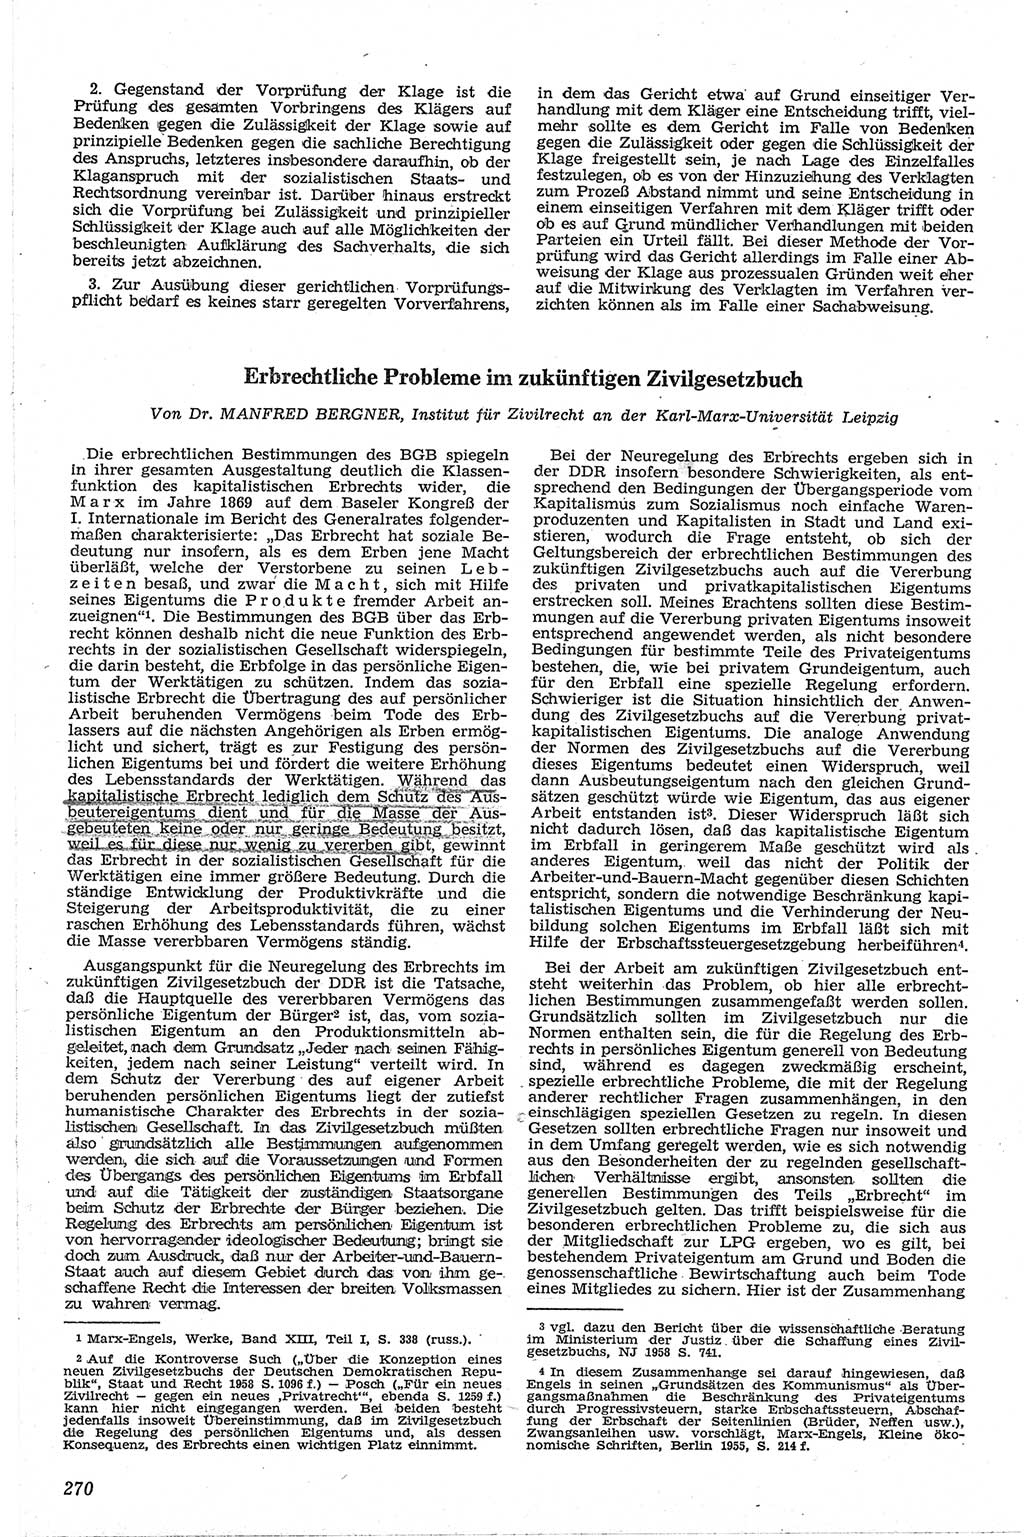 Neue Justiz (NJ), Zeitschrift für Recht und Rechtswissenschaft [Deutsche Demokratische Republik (DDR)], 13. Jahrgang 1959, Seite 270 (NJ DDR 1959, S. 270)